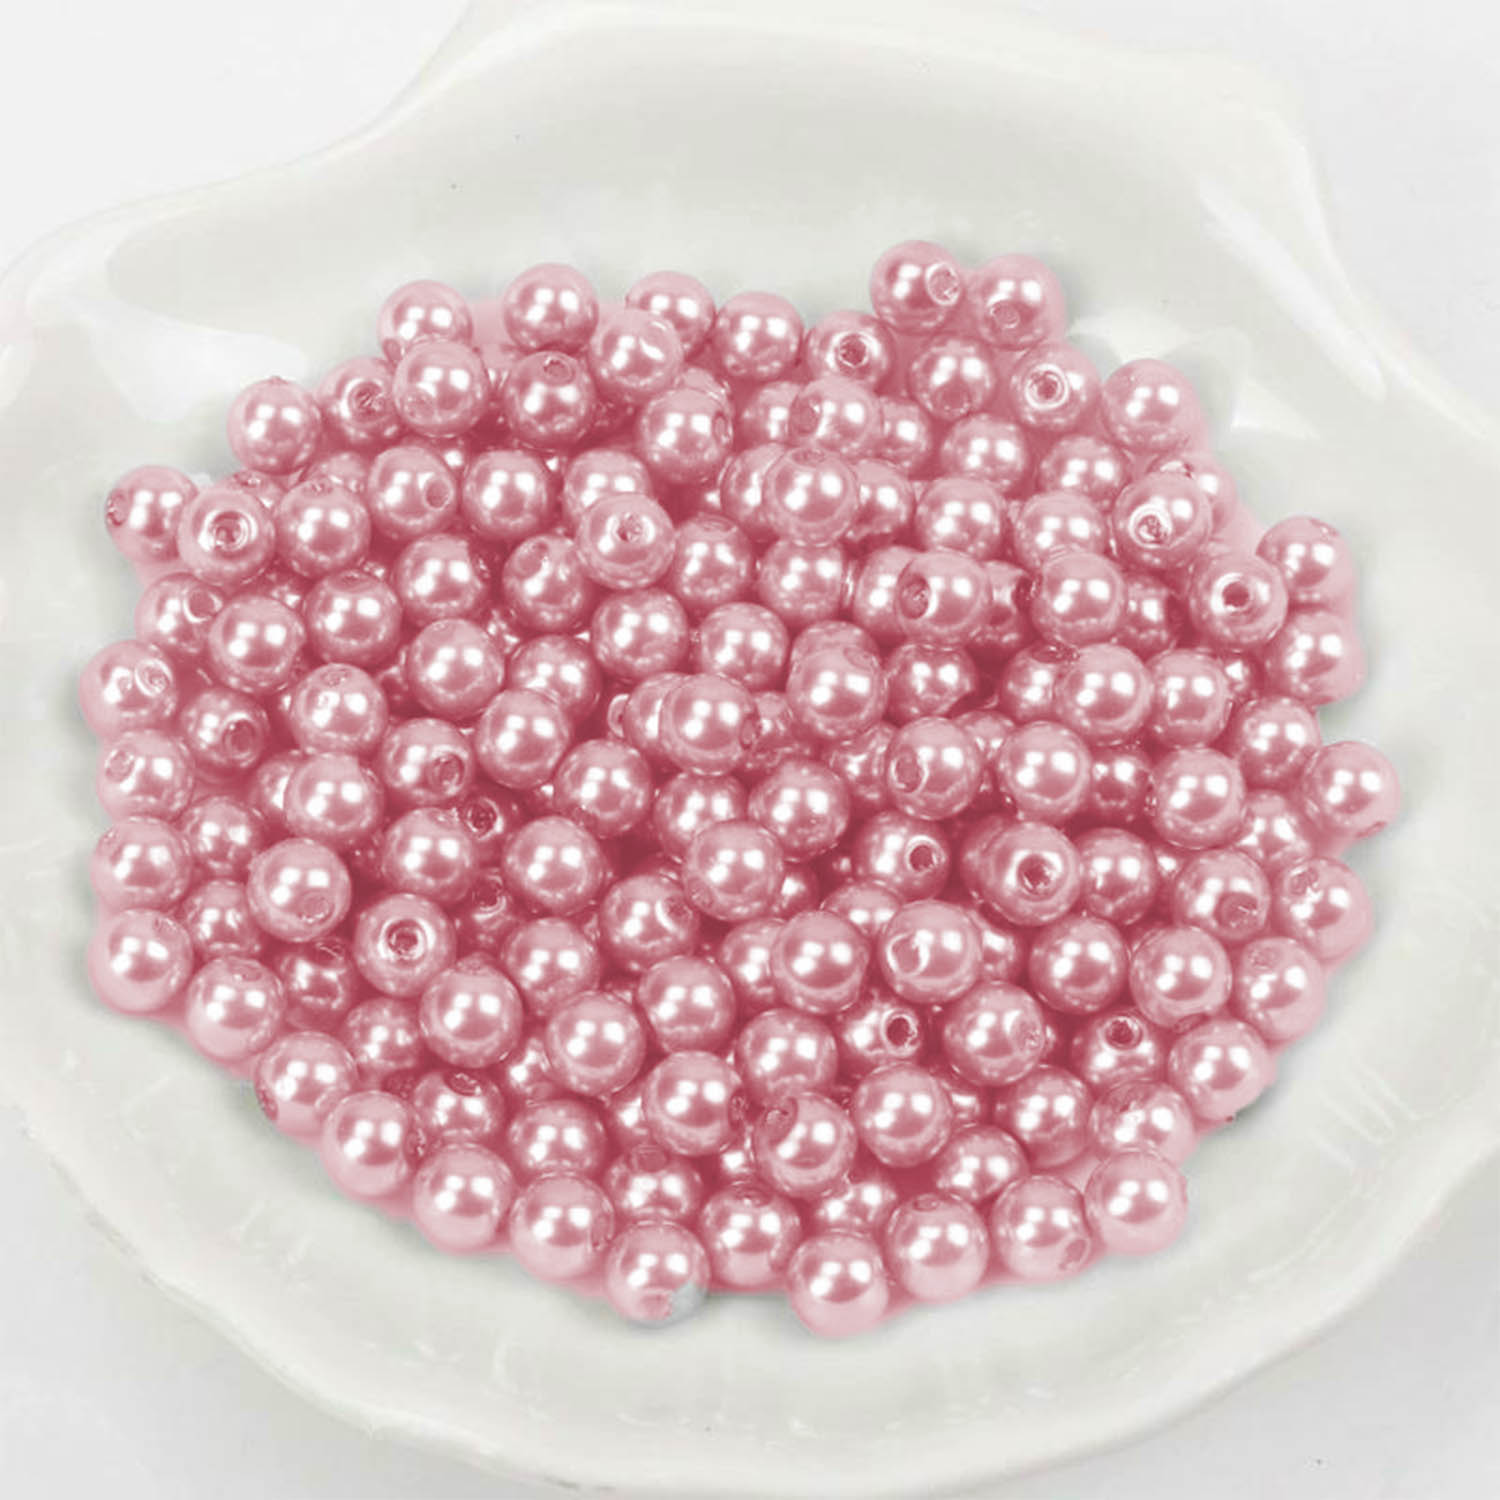 Wachsperlen - 600 Stück - 2mm - Rosa dunkel